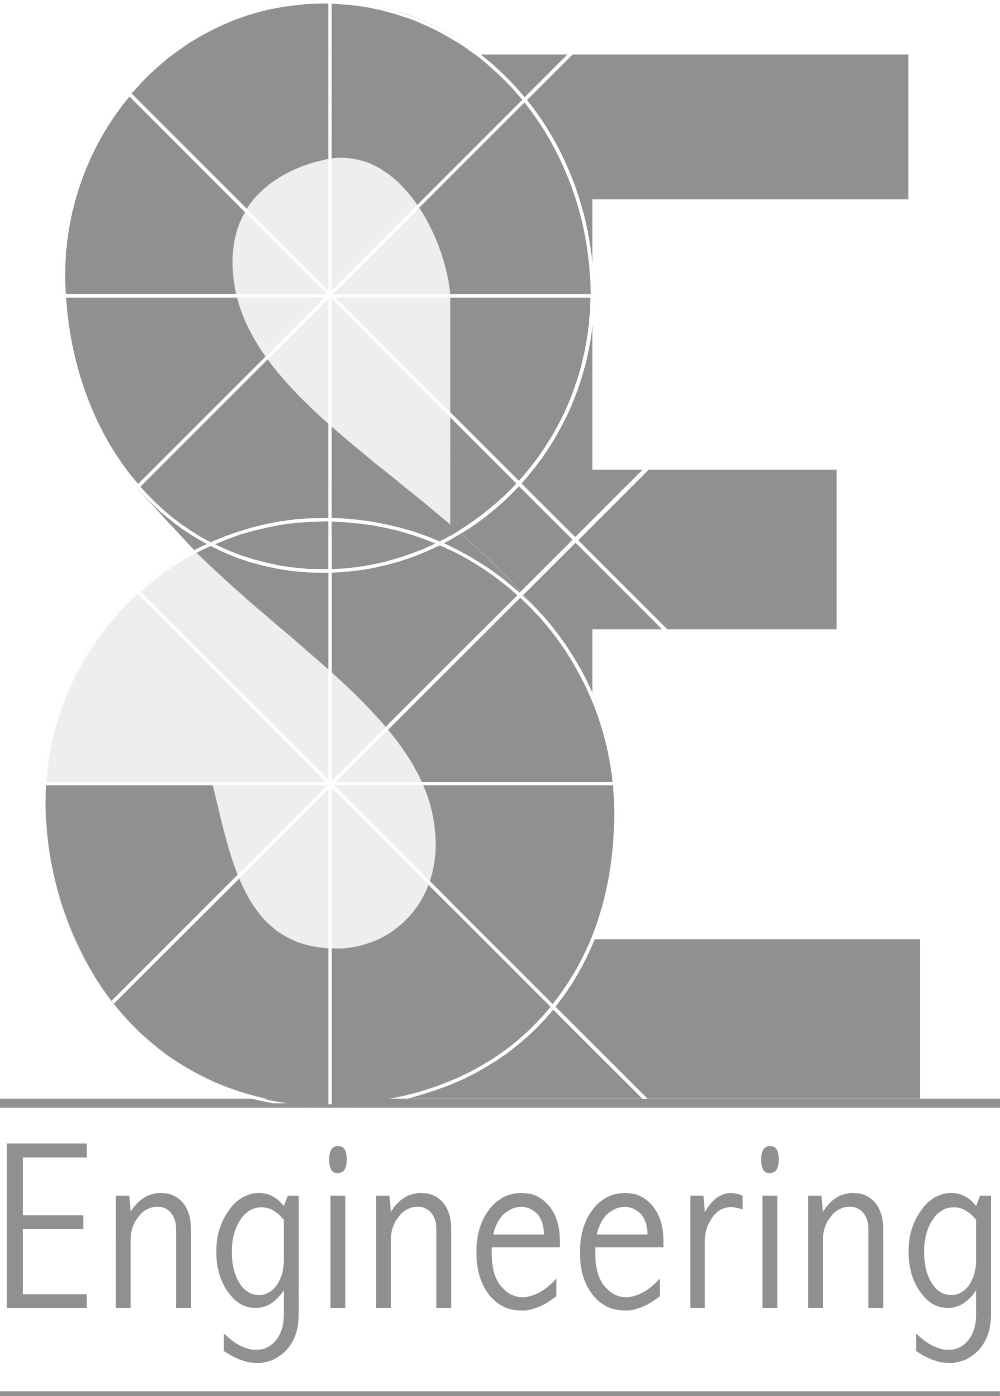 SE Engineering Logo Logos